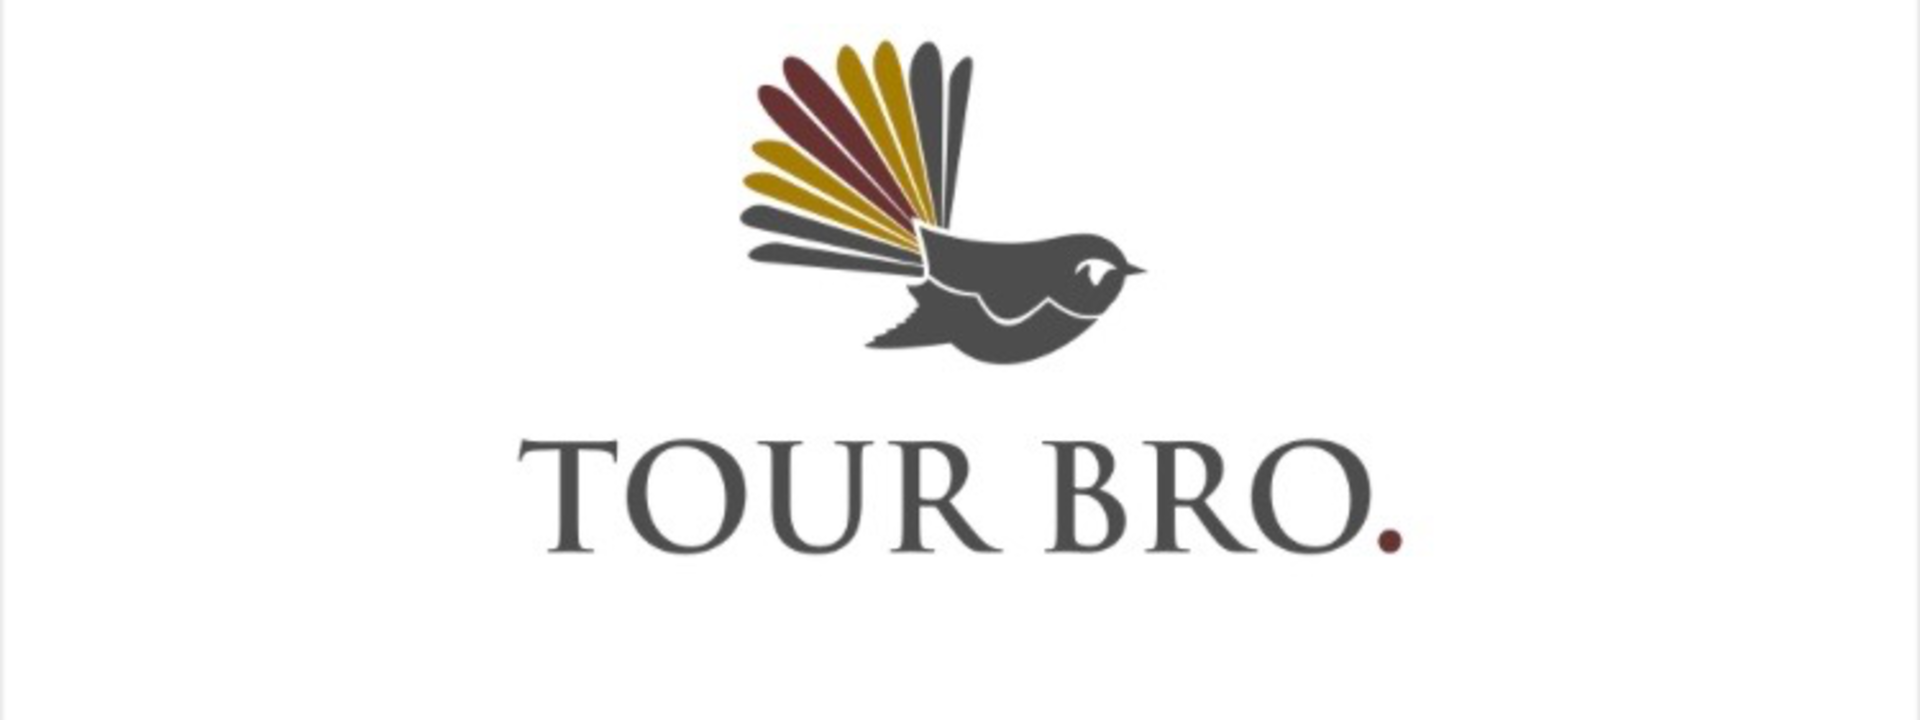 Logo: Tour Bro.